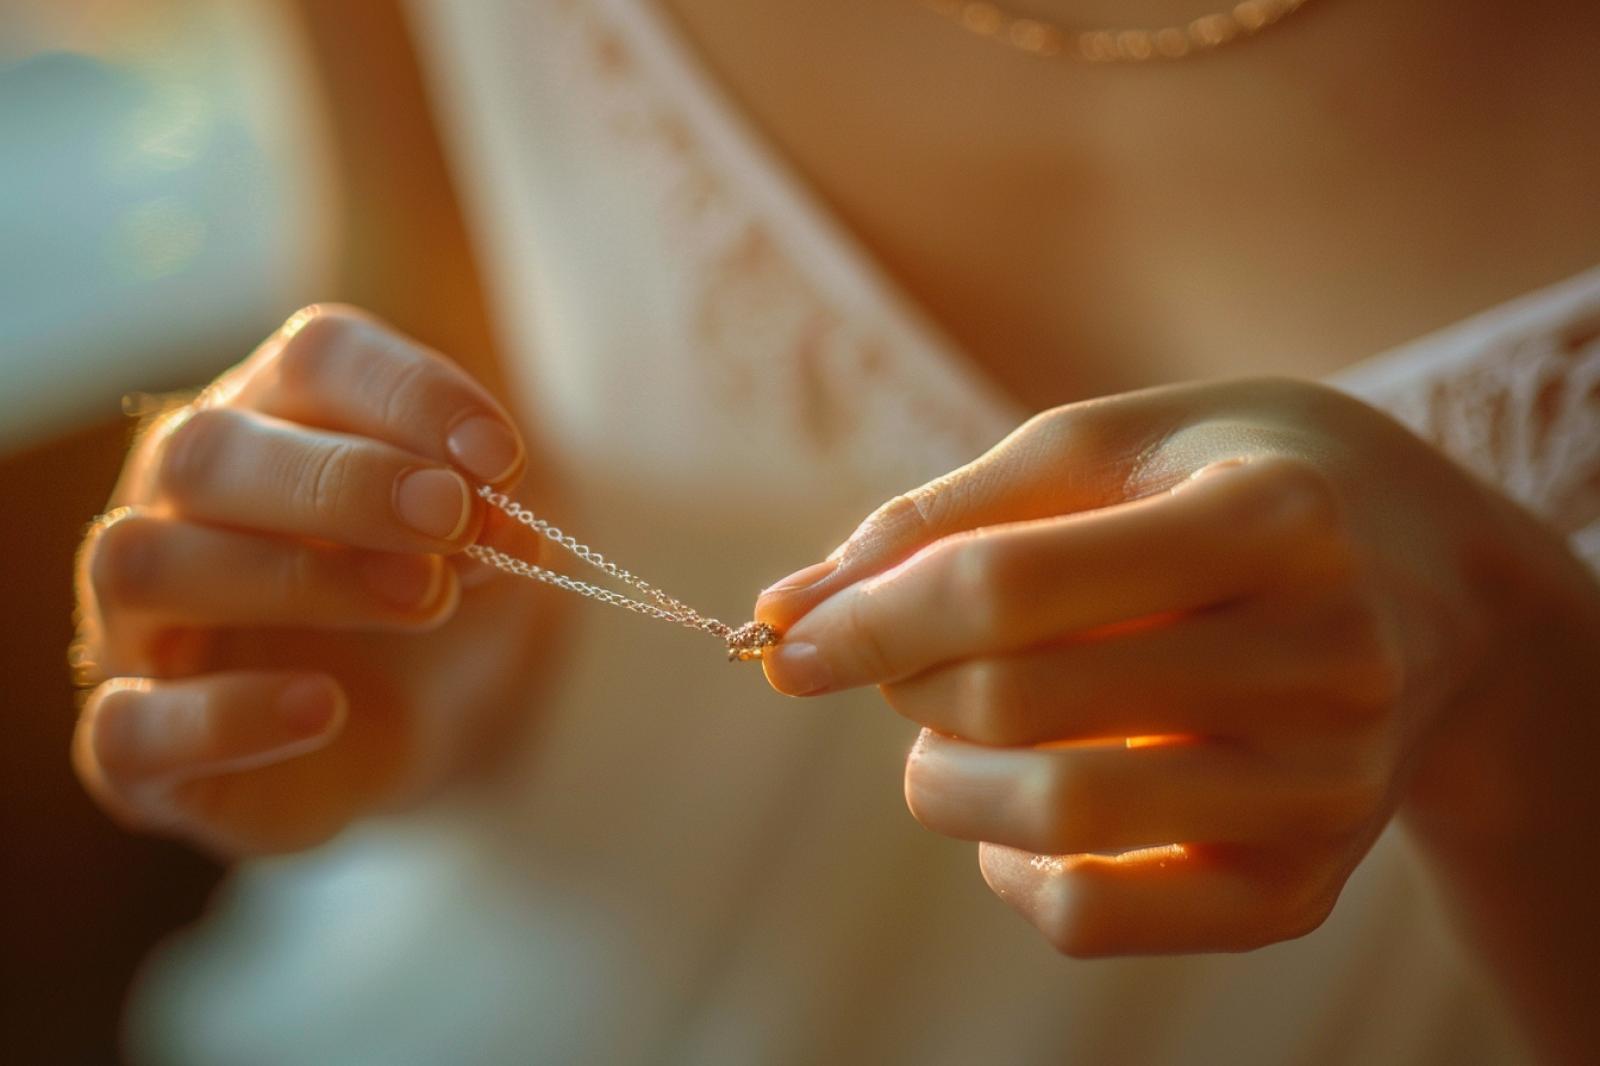 Comment fabriquer un noeud coulissant pour un collier ?